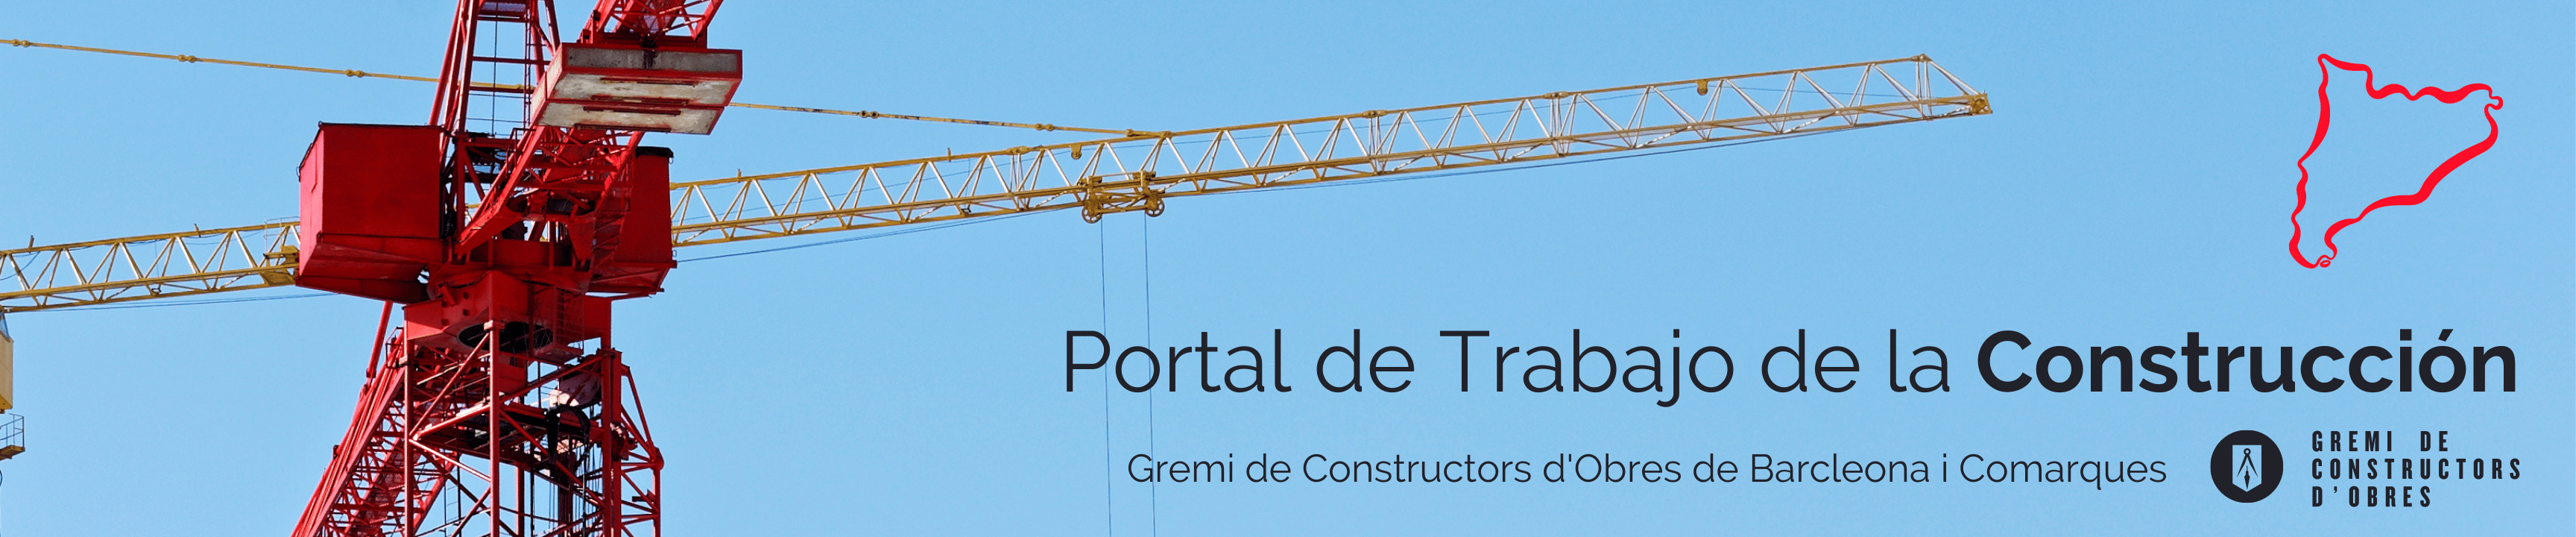 Portal de Trabajo de Construcción (Catalunya) - Gremi de Constructors d'Obres de Barcelona i Comarques